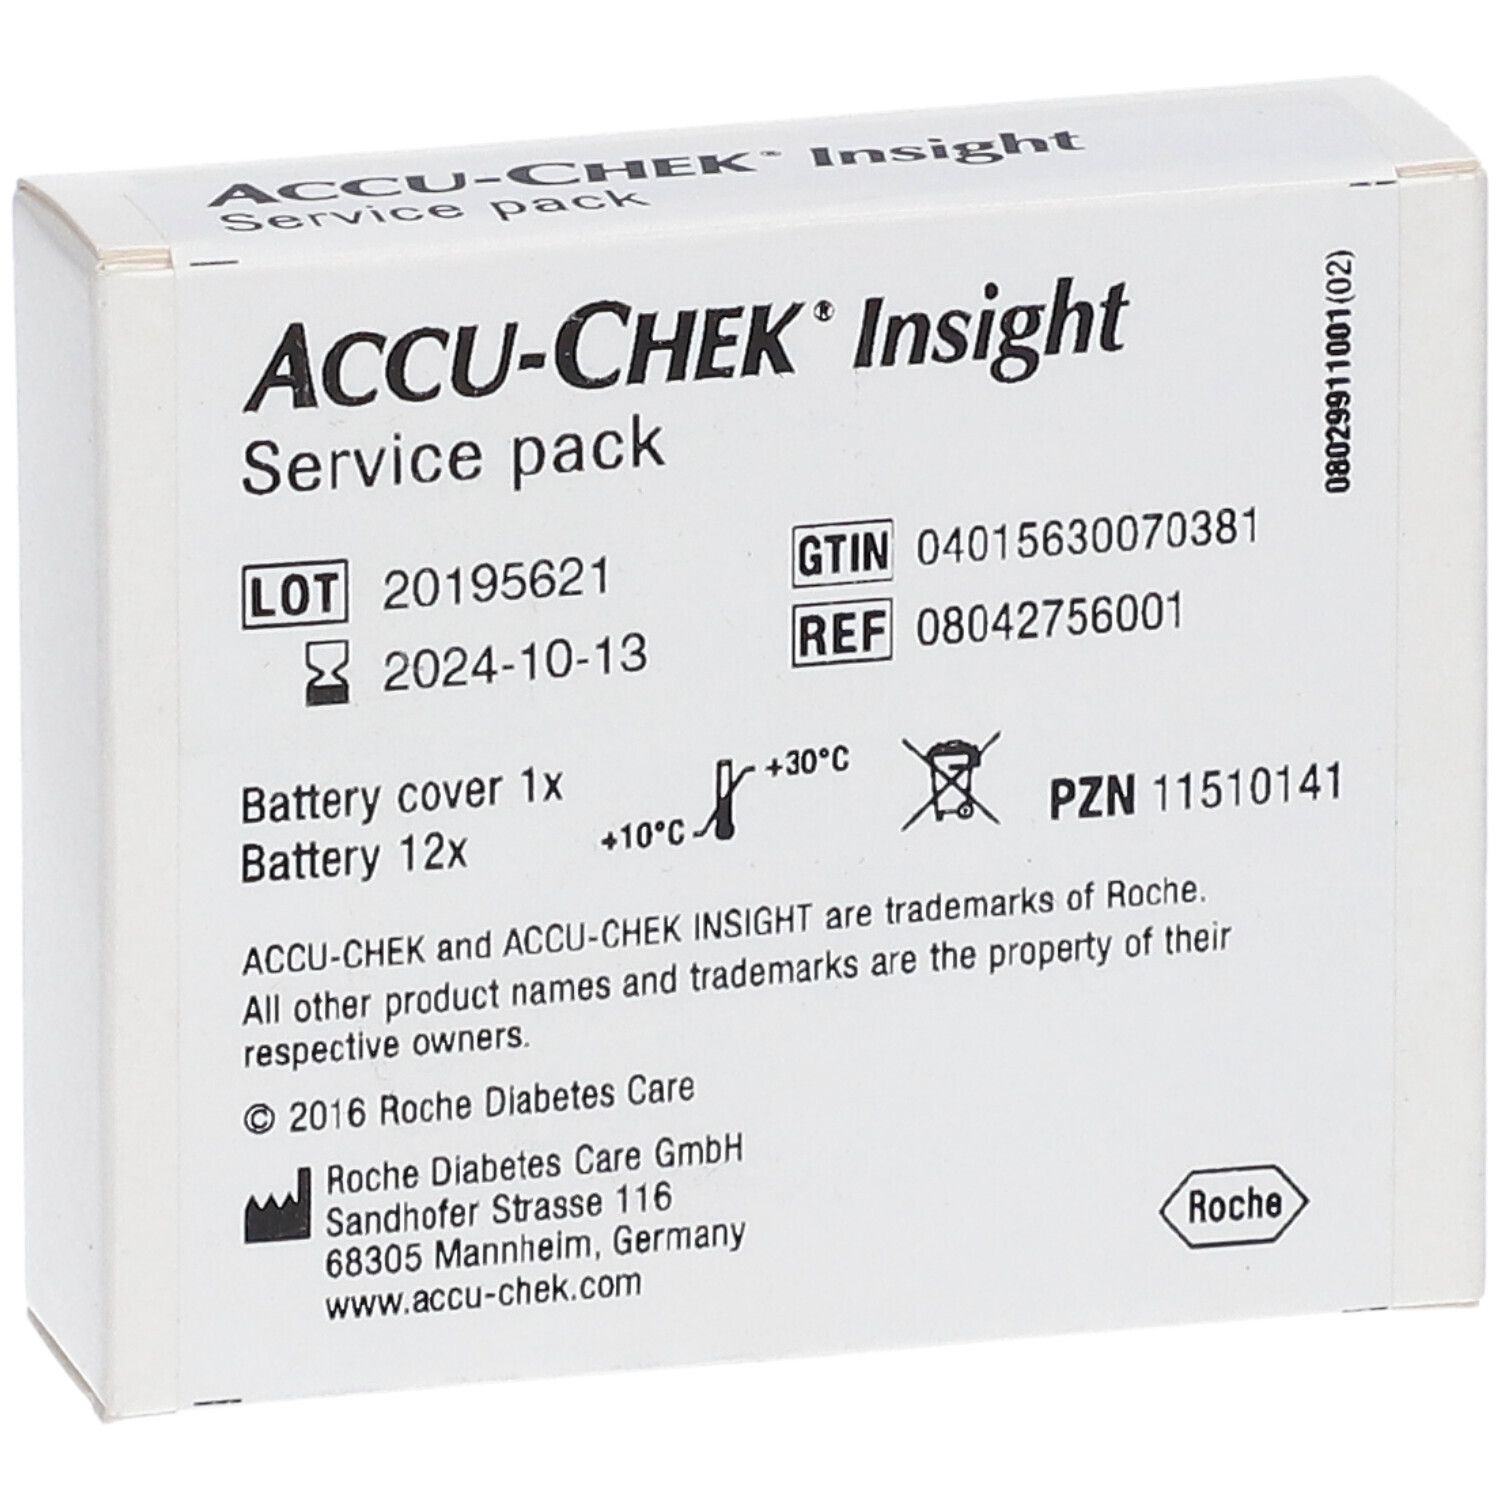 ACCU-CHEK® Insight Service Pack